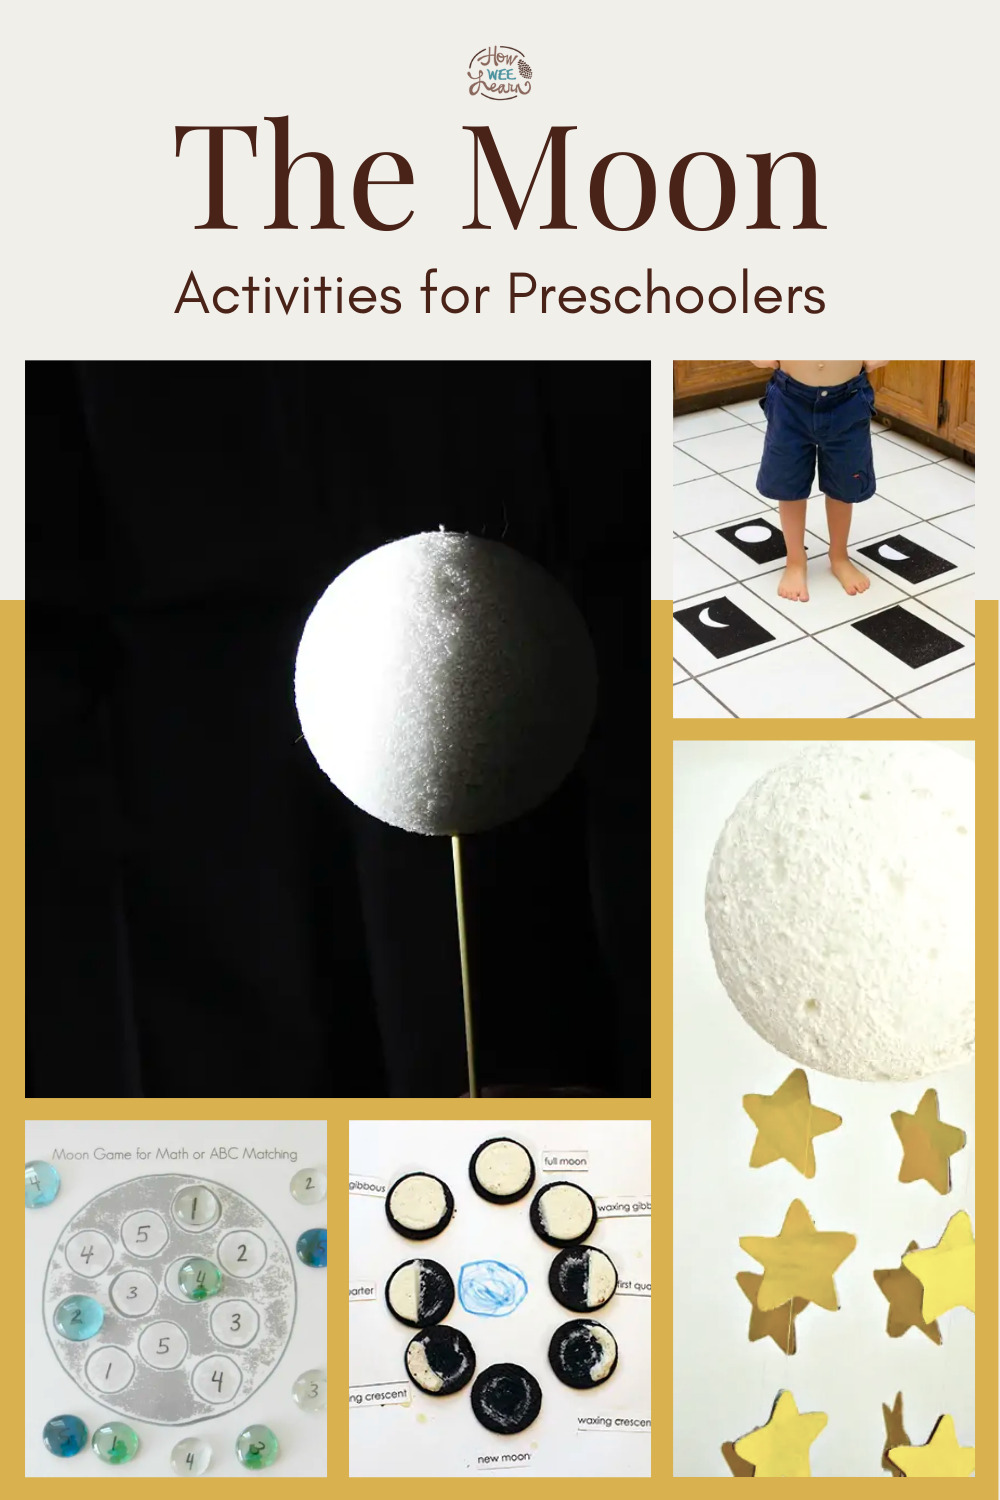 The Moon Activities for Preschoolers